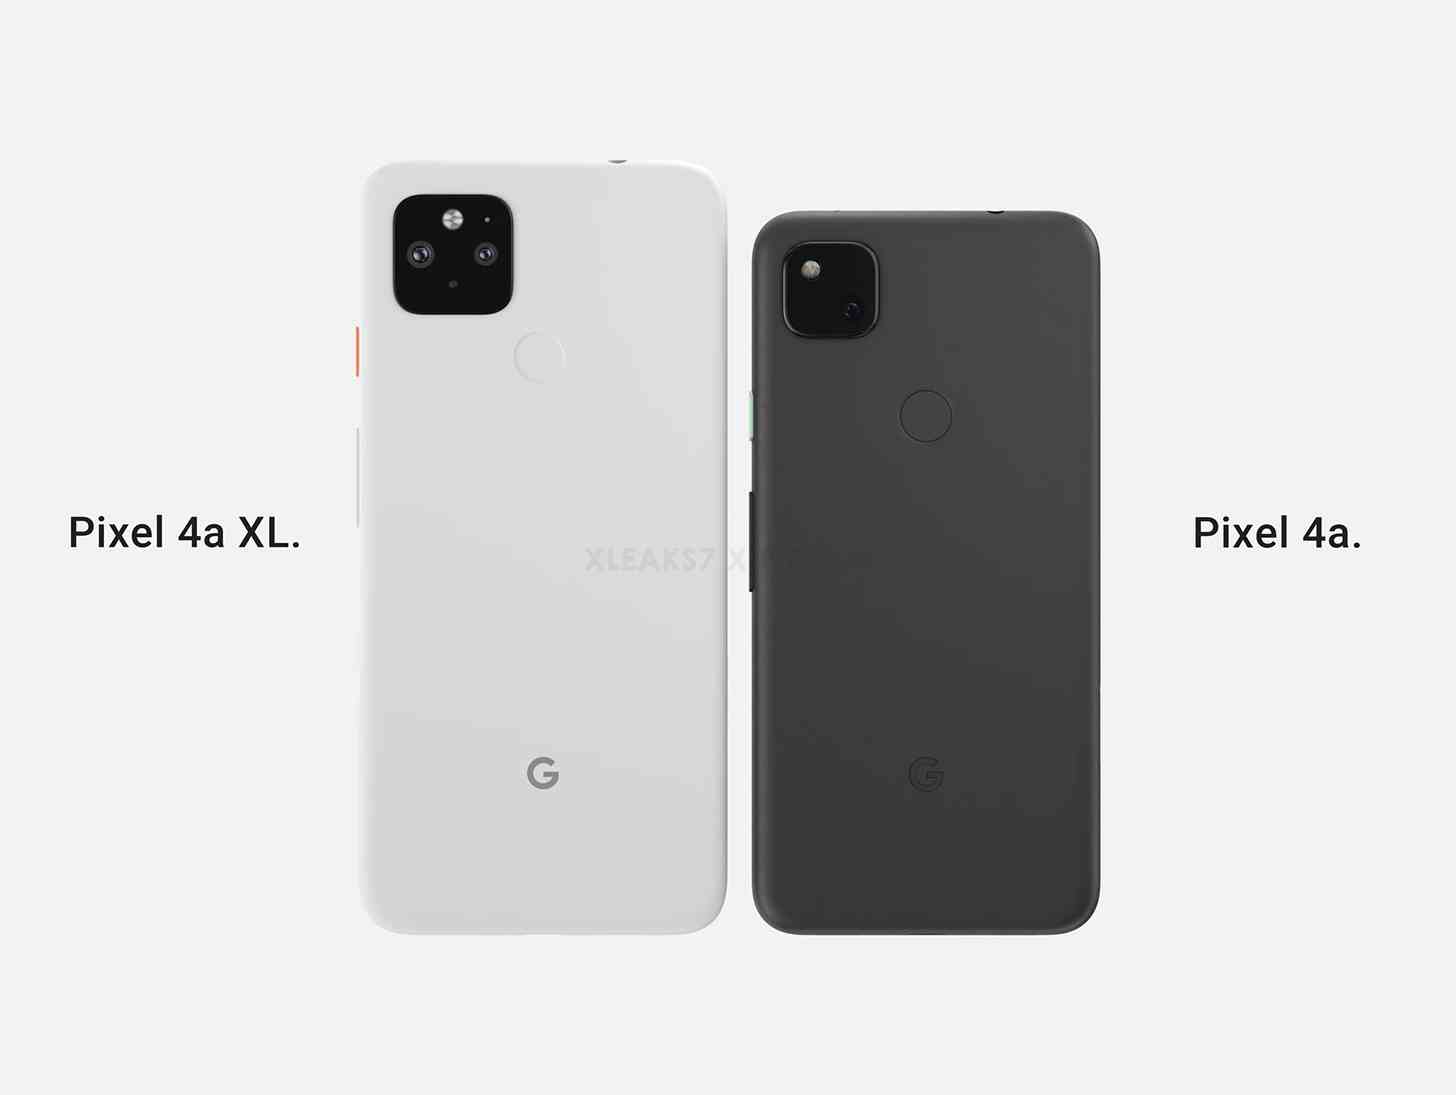 Pixel 4a XL, Pixel 4a comparison